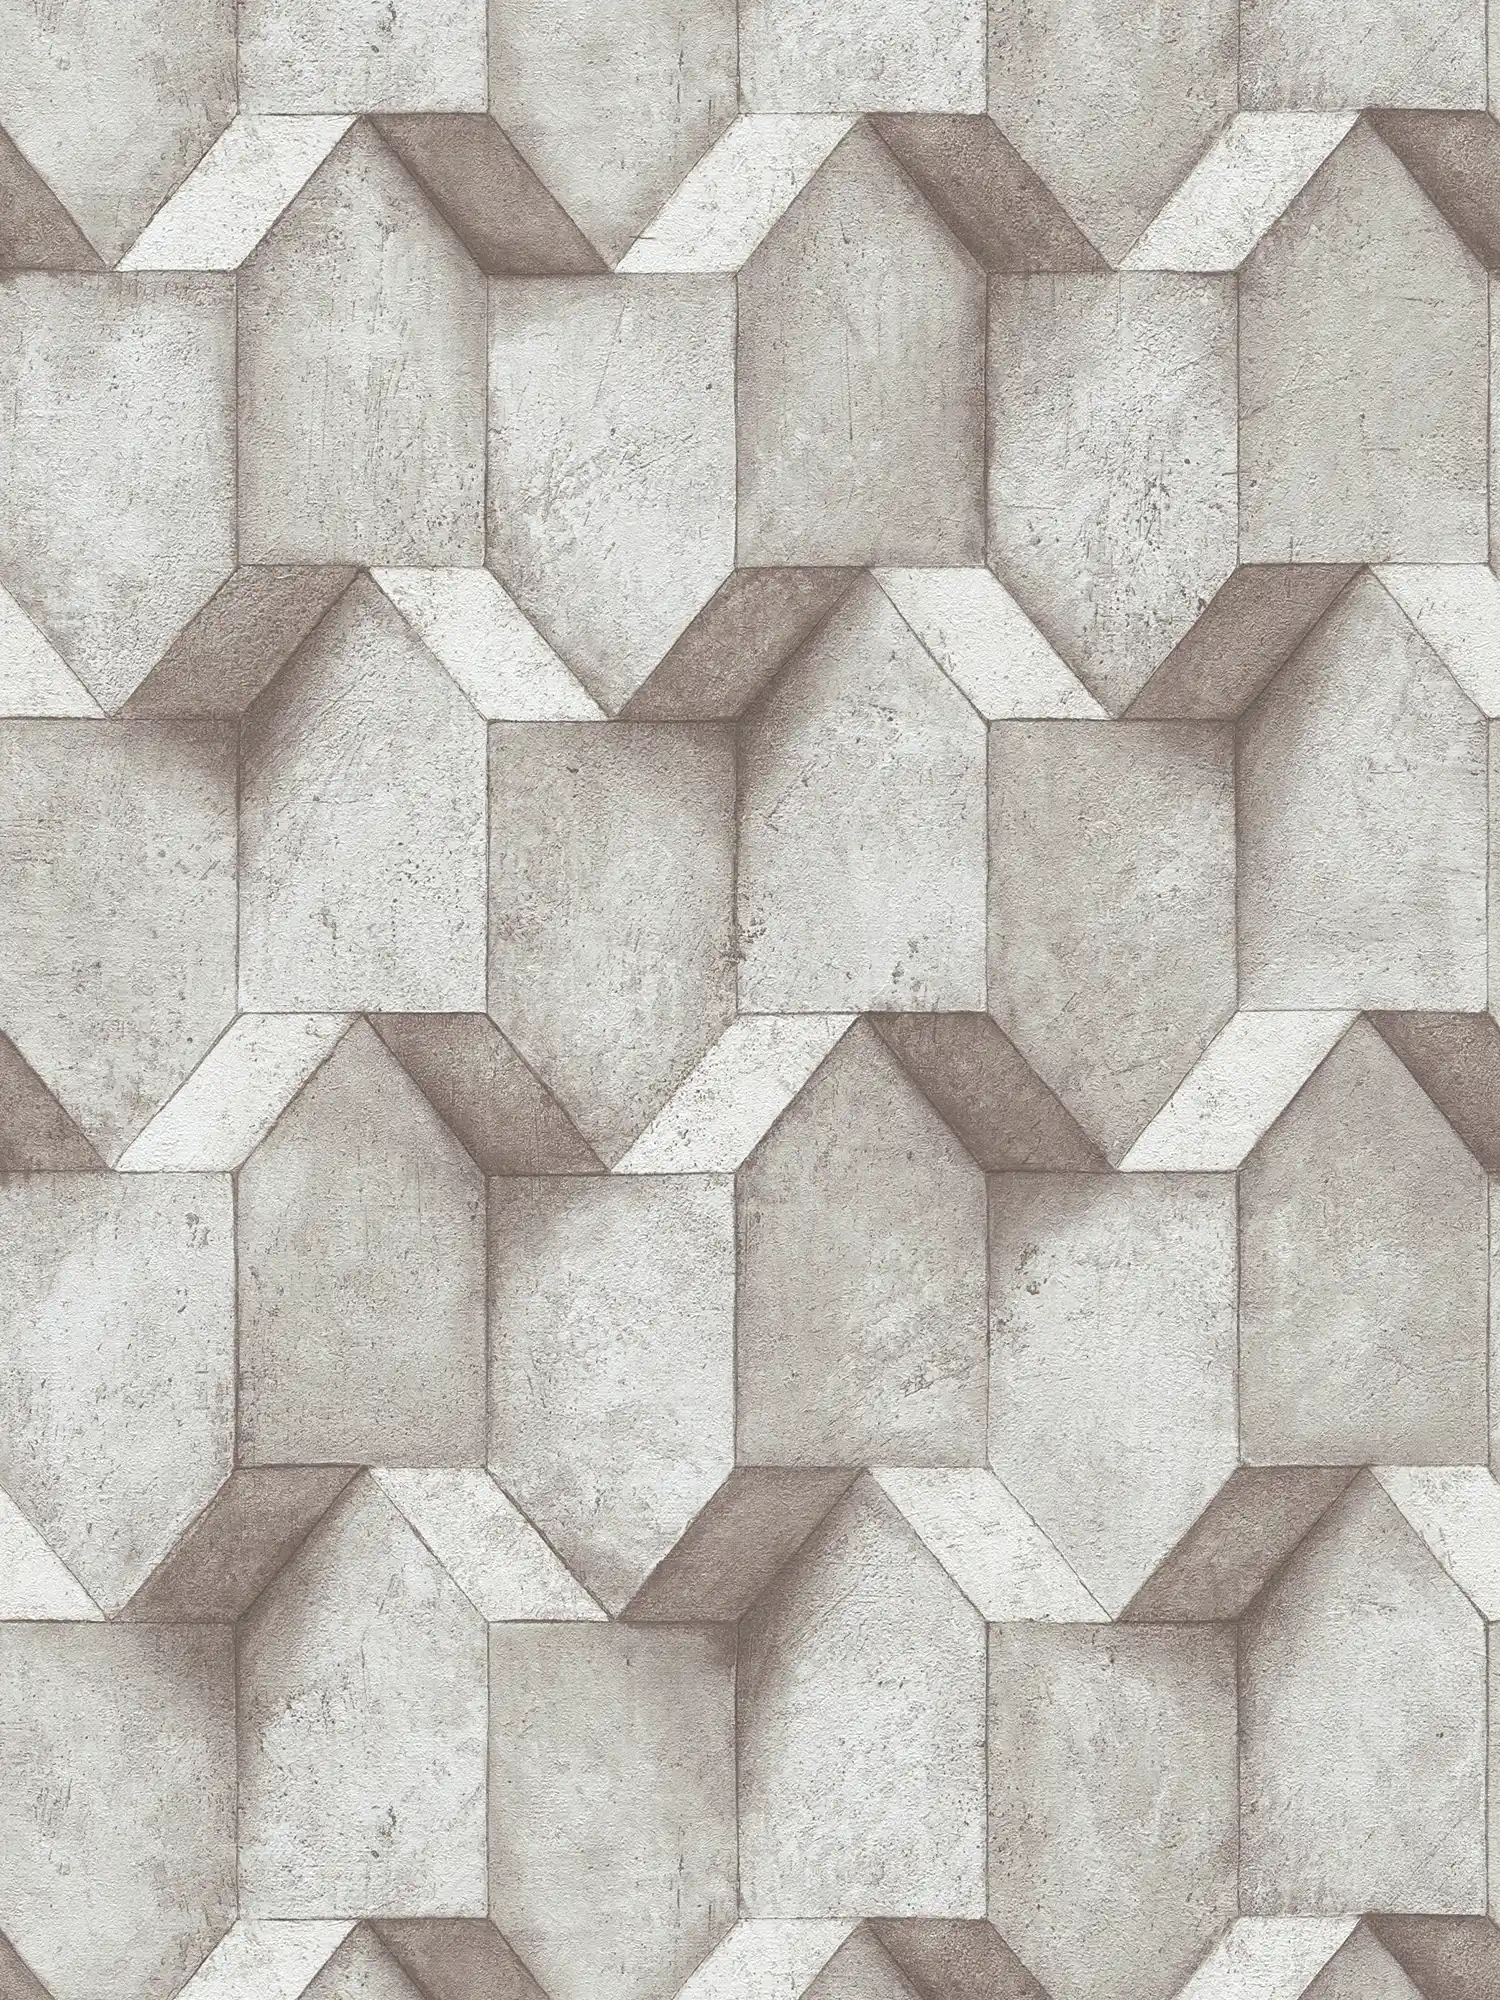 3D-behang grijs met betonlook design - grijs, beige
